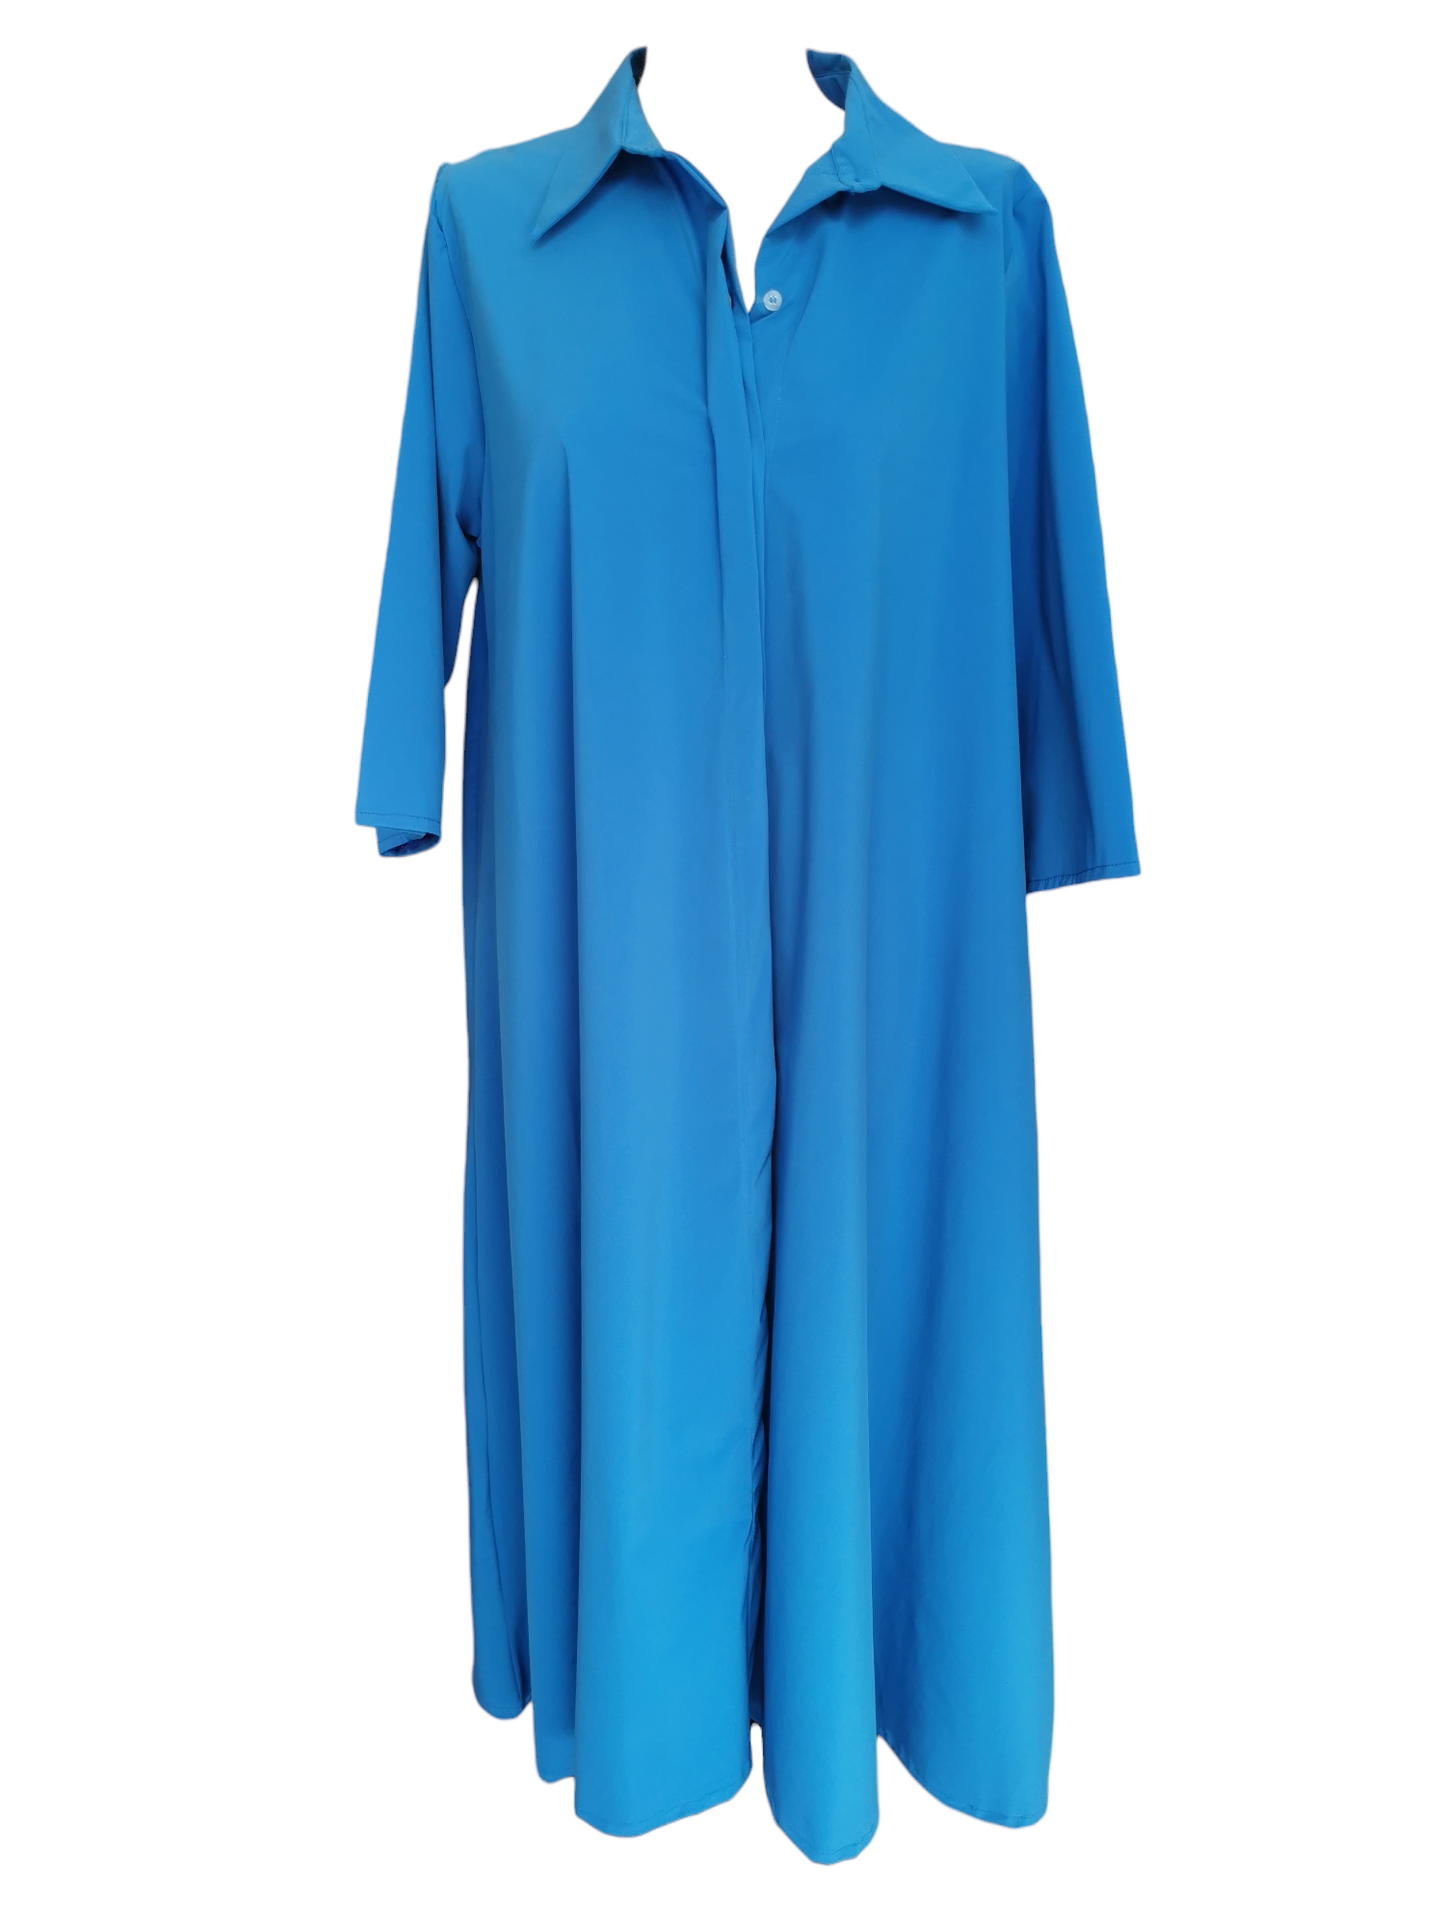 Naria Dress - Royal blue